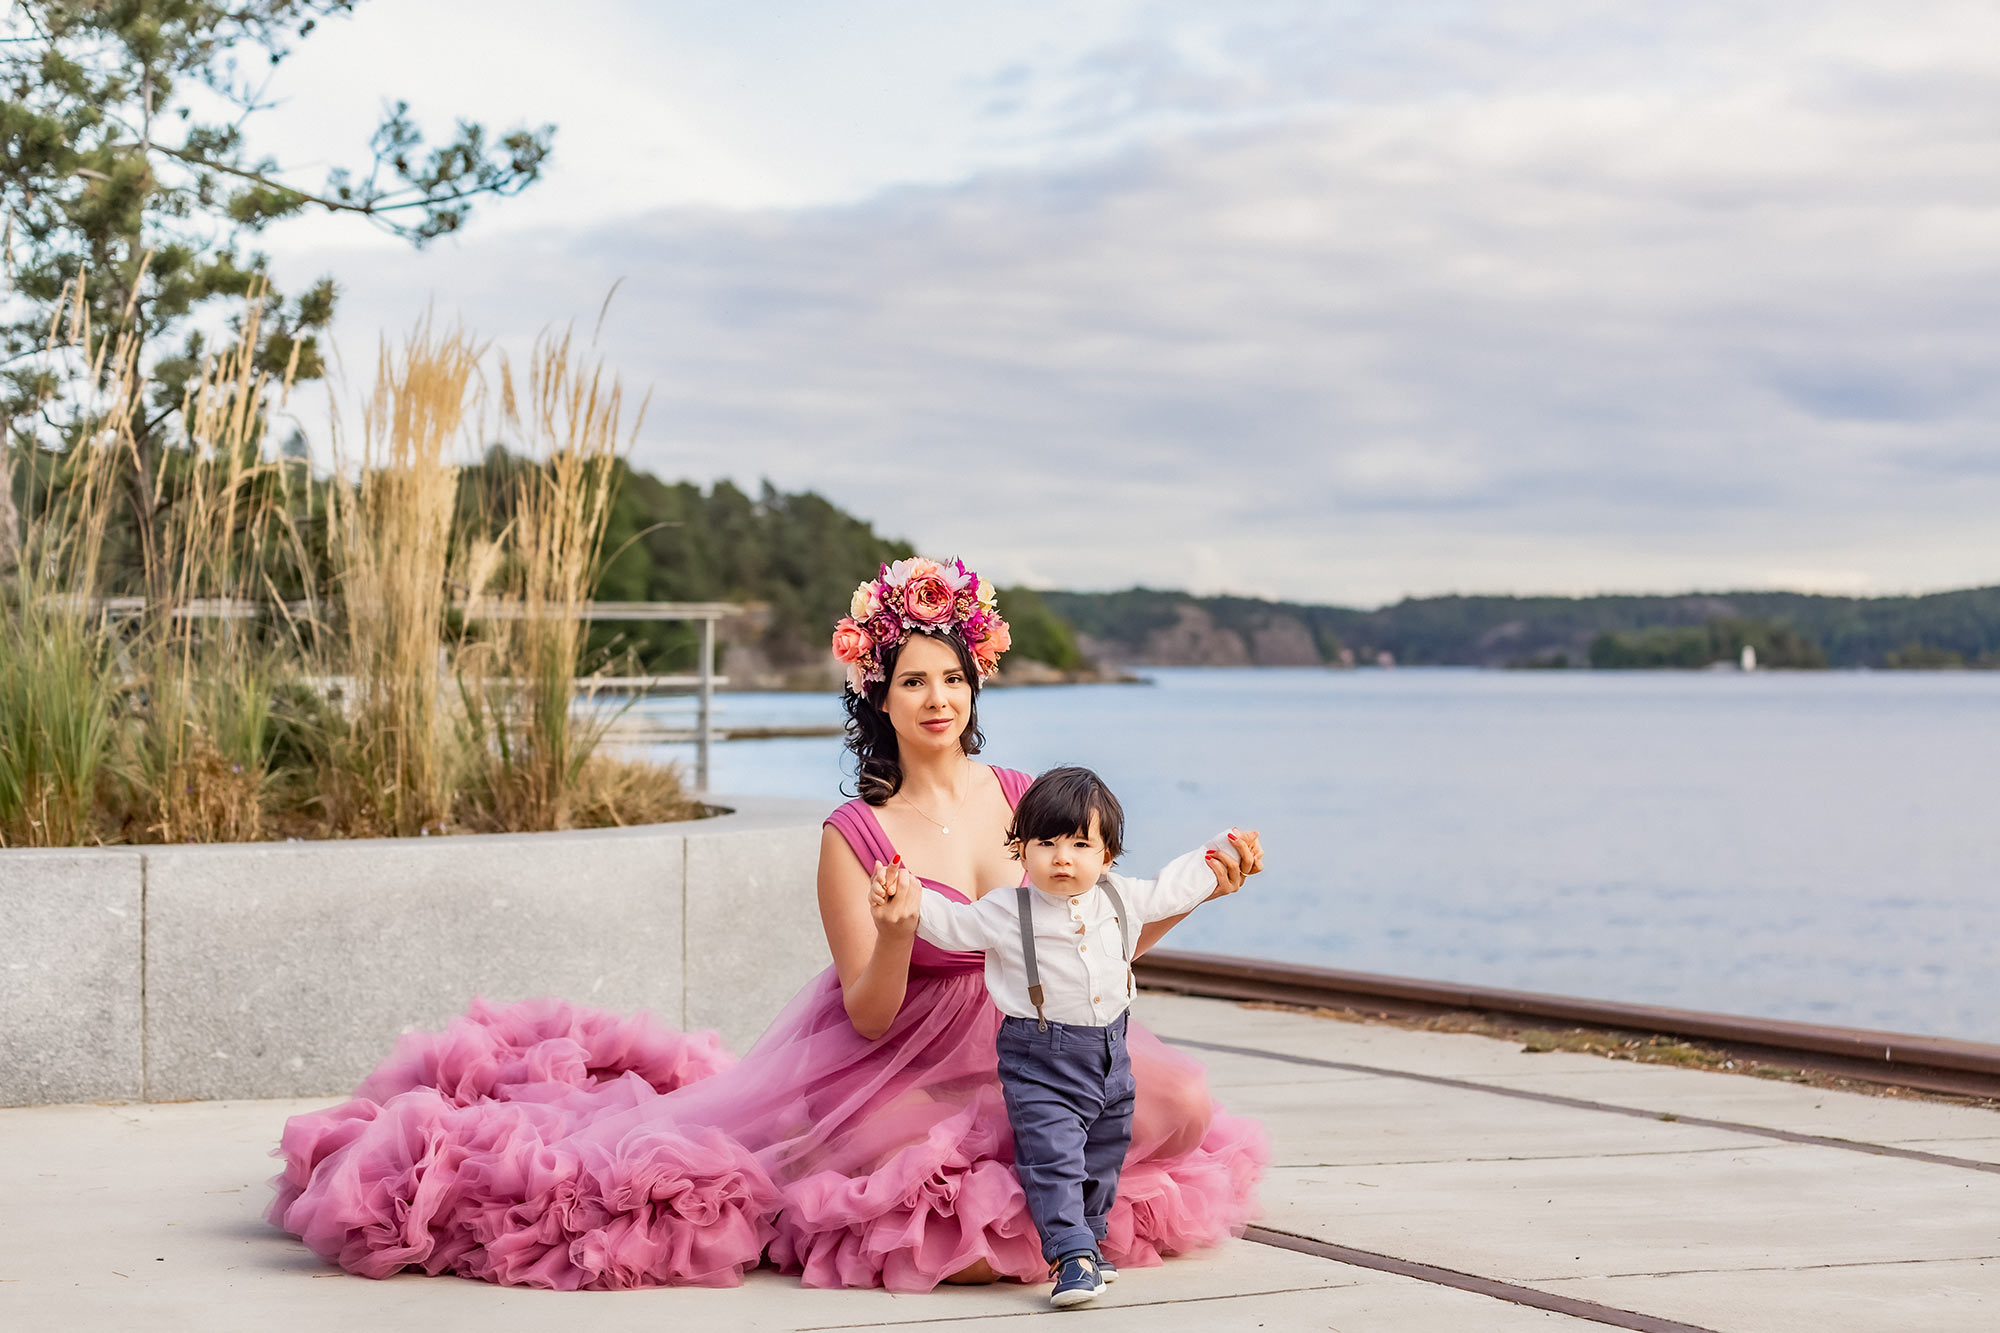 En mamma i rosa tyllklänning och med en blomstertiara sitter på en kaj och håller sin lilla son i händerna för att hjälpa honom att ta sina första steg. I bakgrunden syns havet och grönska.